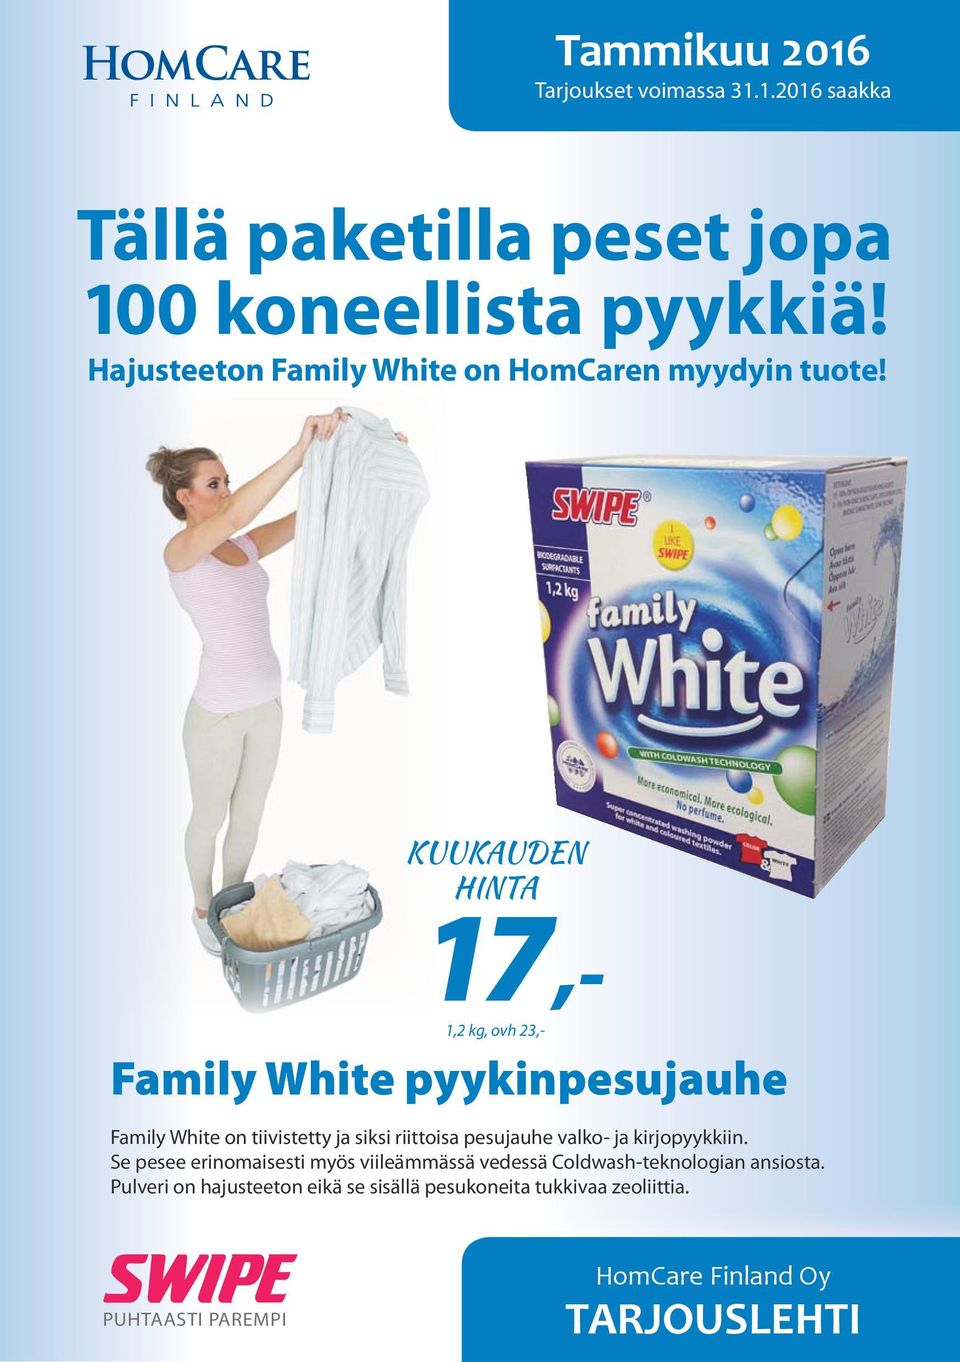 KUUKAUDEN HINTA 1,2 kg, ovh 23,- 17,- Family White pyykinpesujauhe Family White on tiivistetty ja siksi riittoisa pesujauhe